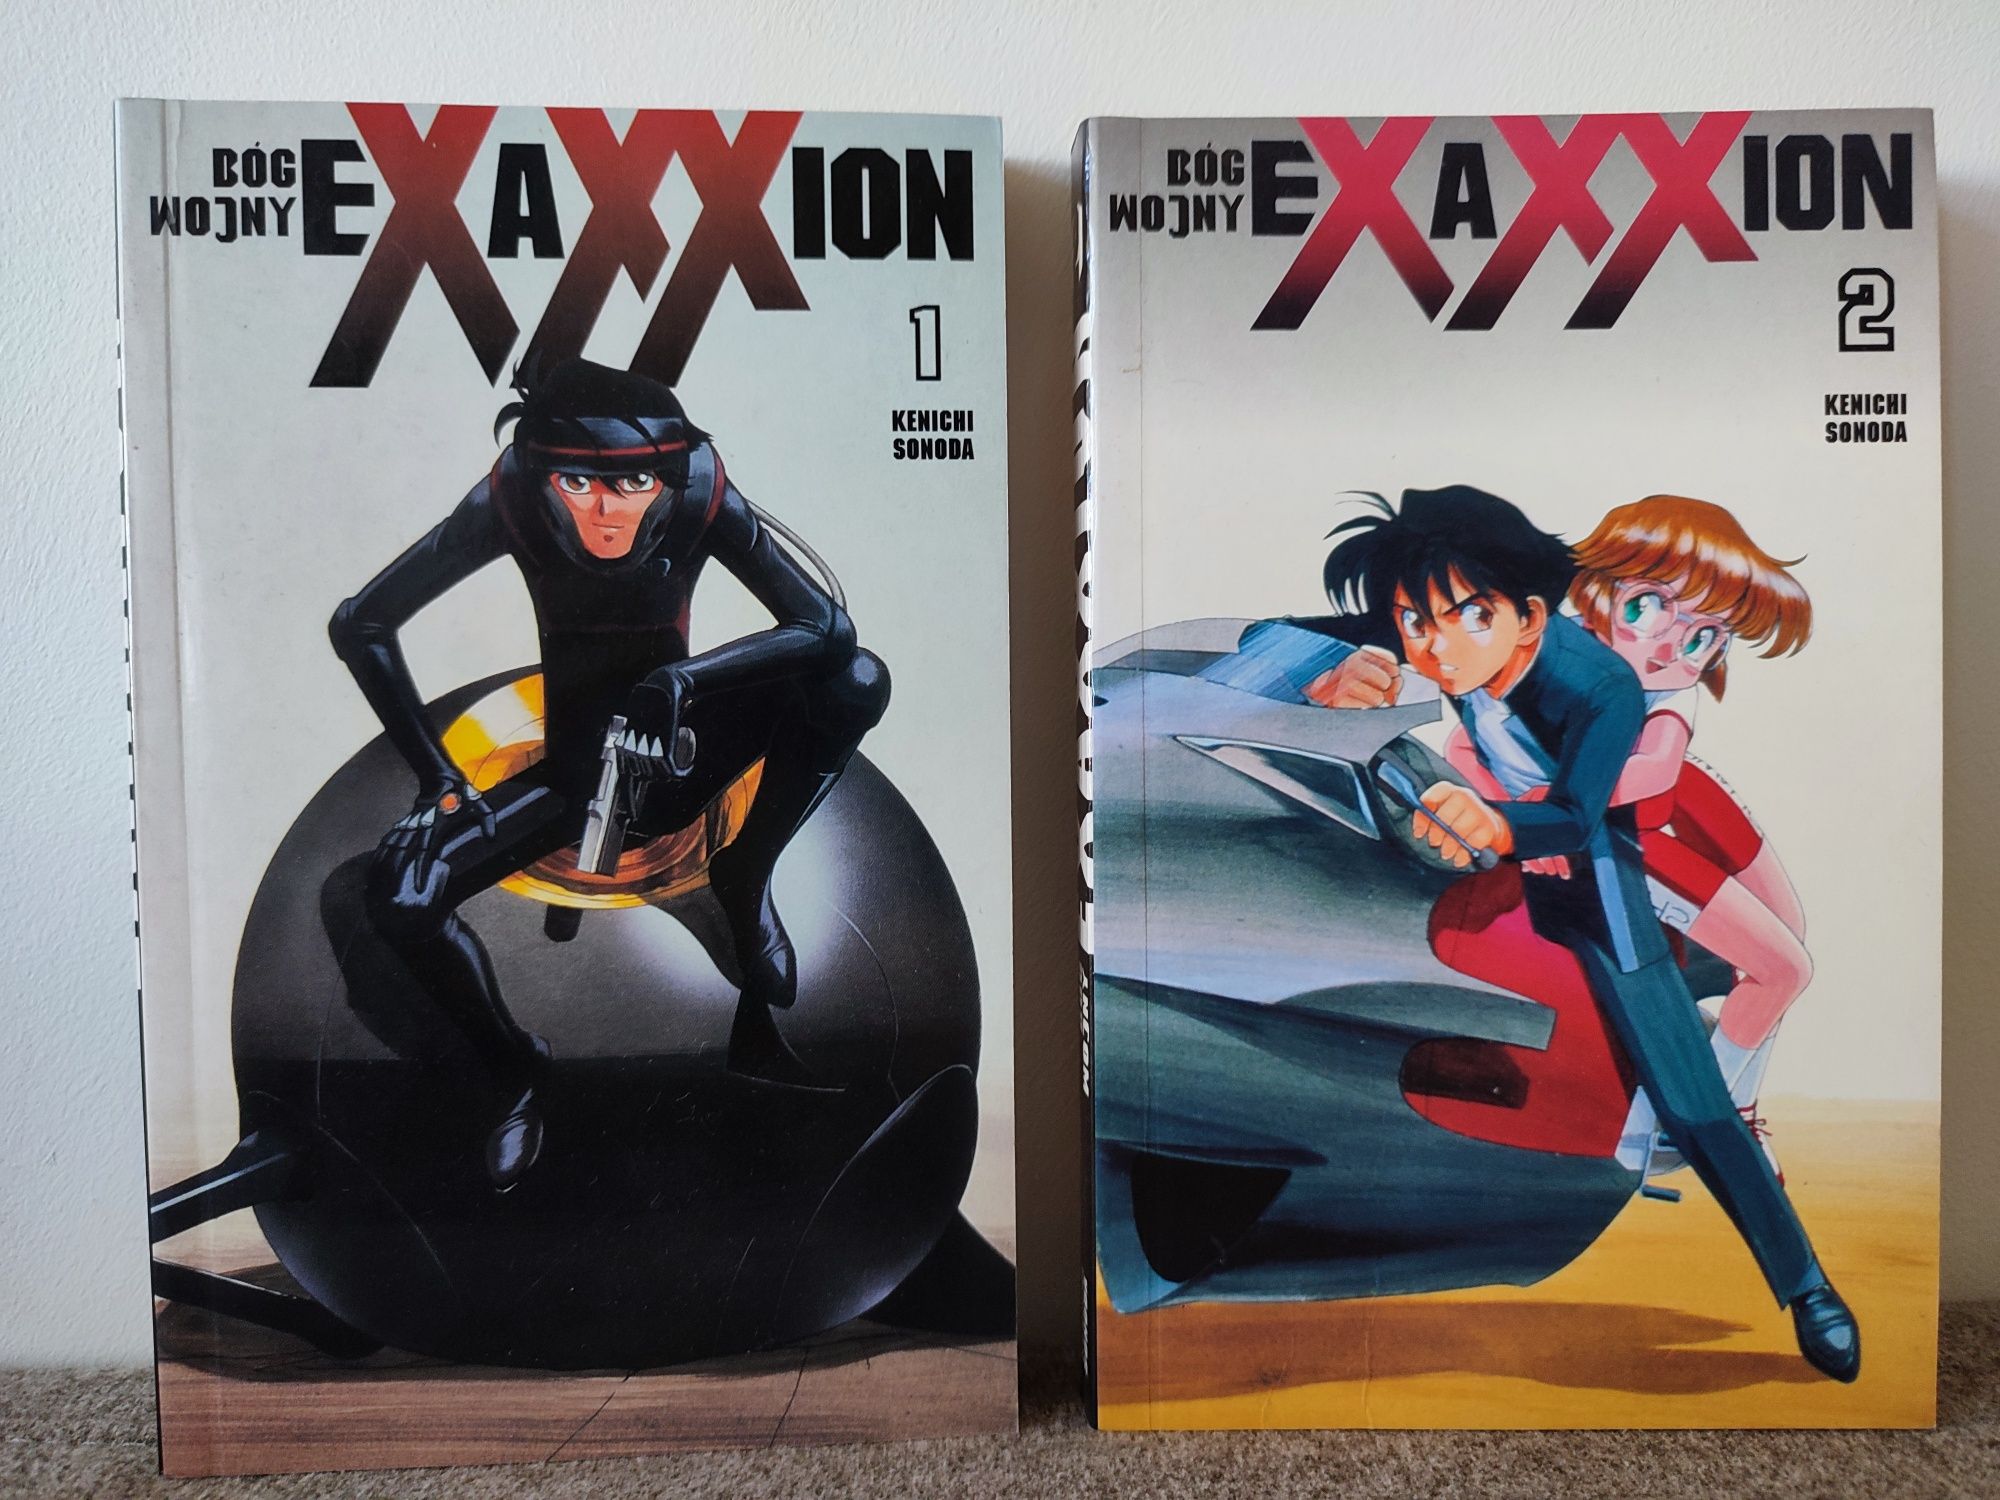 Exaxxion: Bóg wojny tom 1 i 2 manga 15 zł za 2 tomy